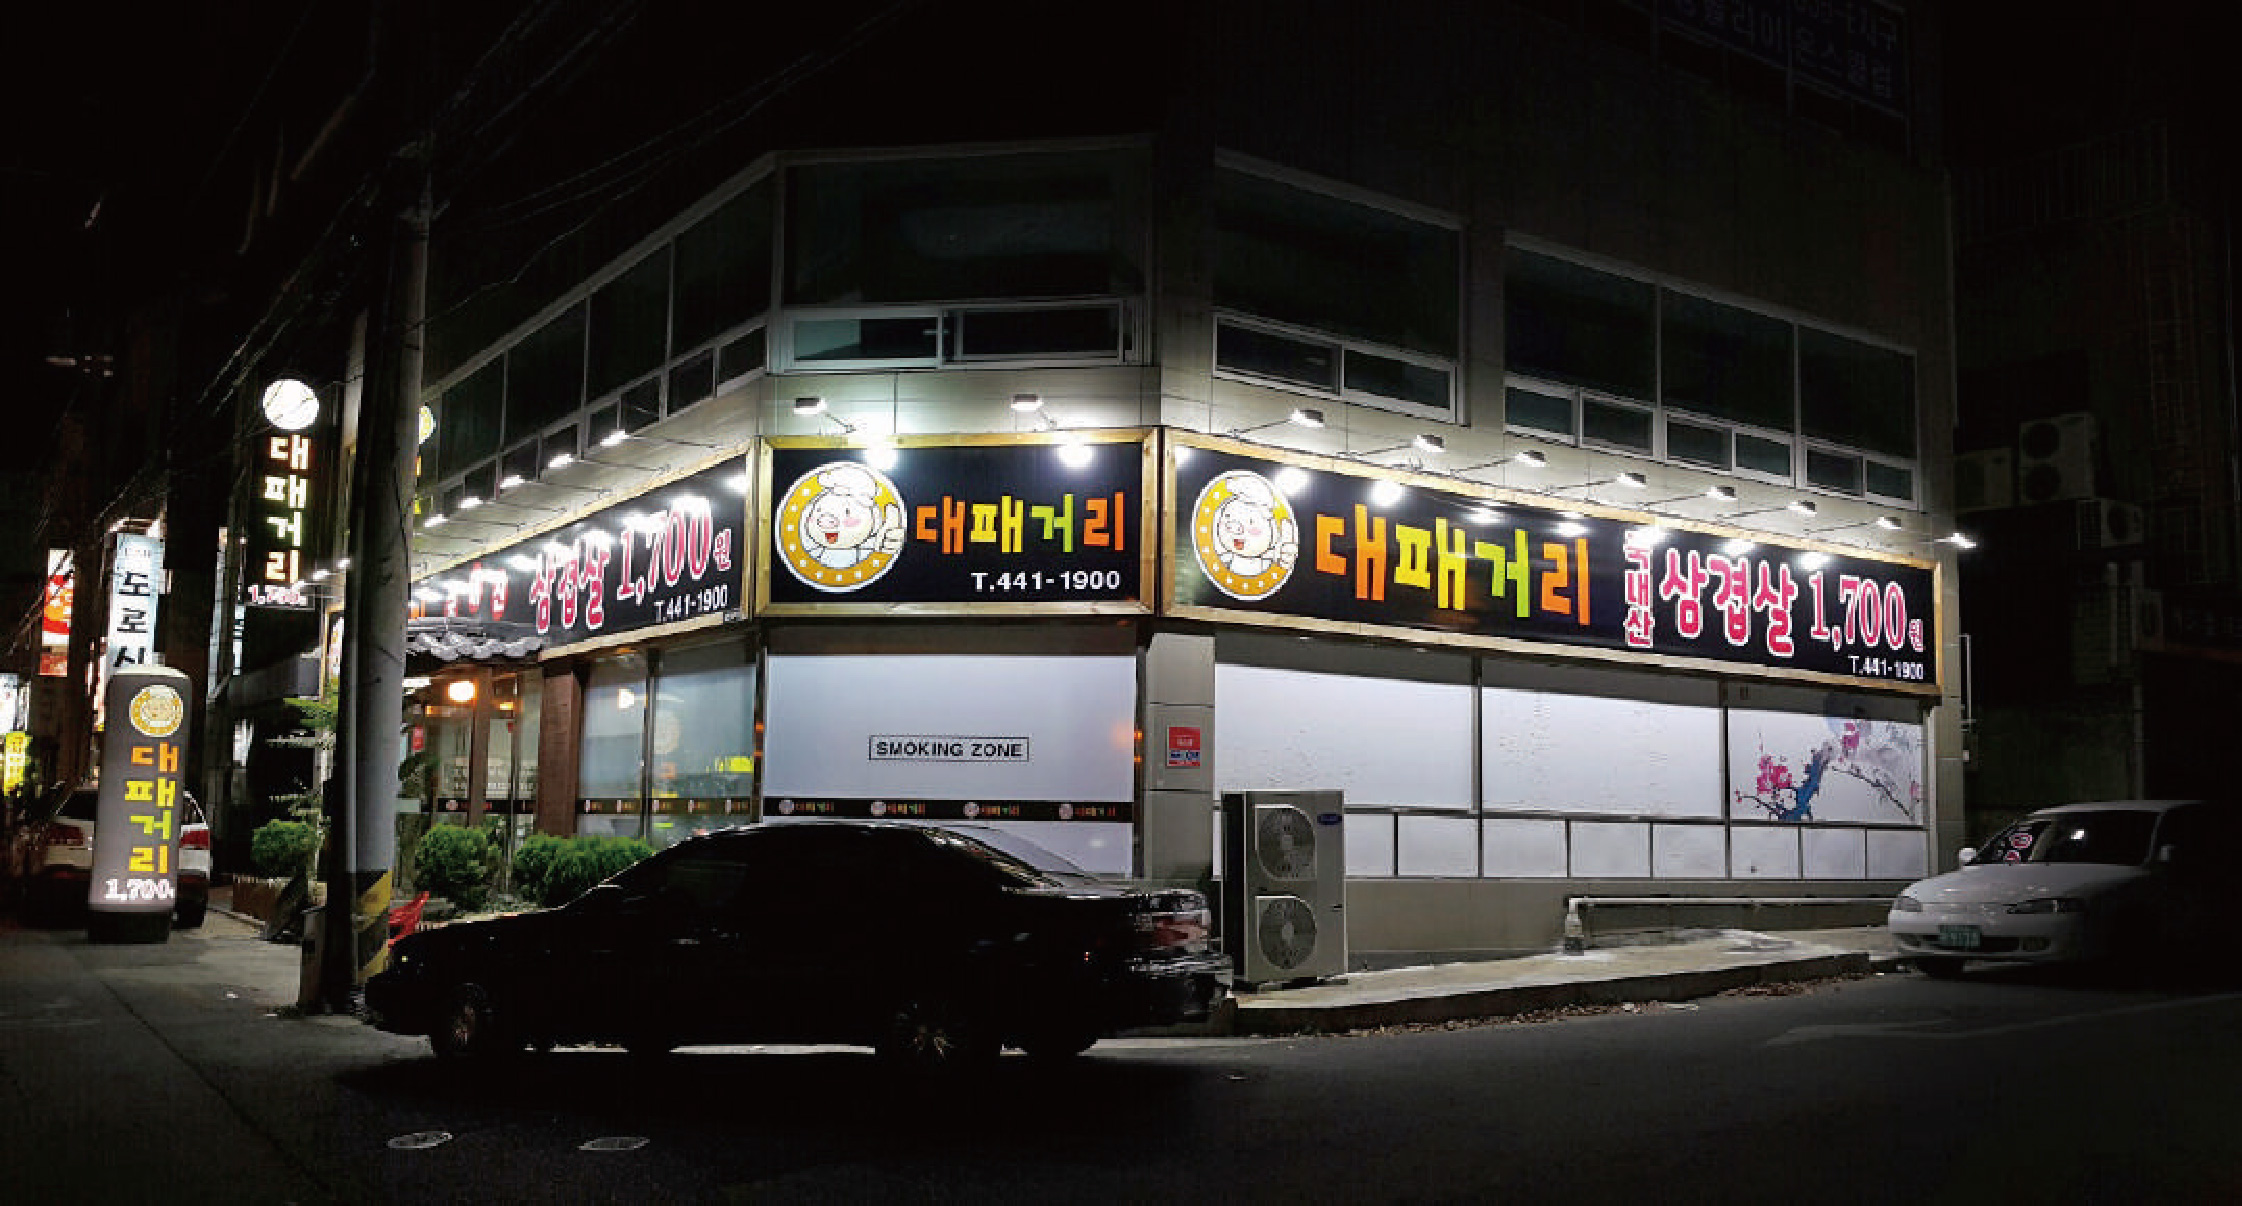 Restaurant in Korea, 50W LED FloodLight